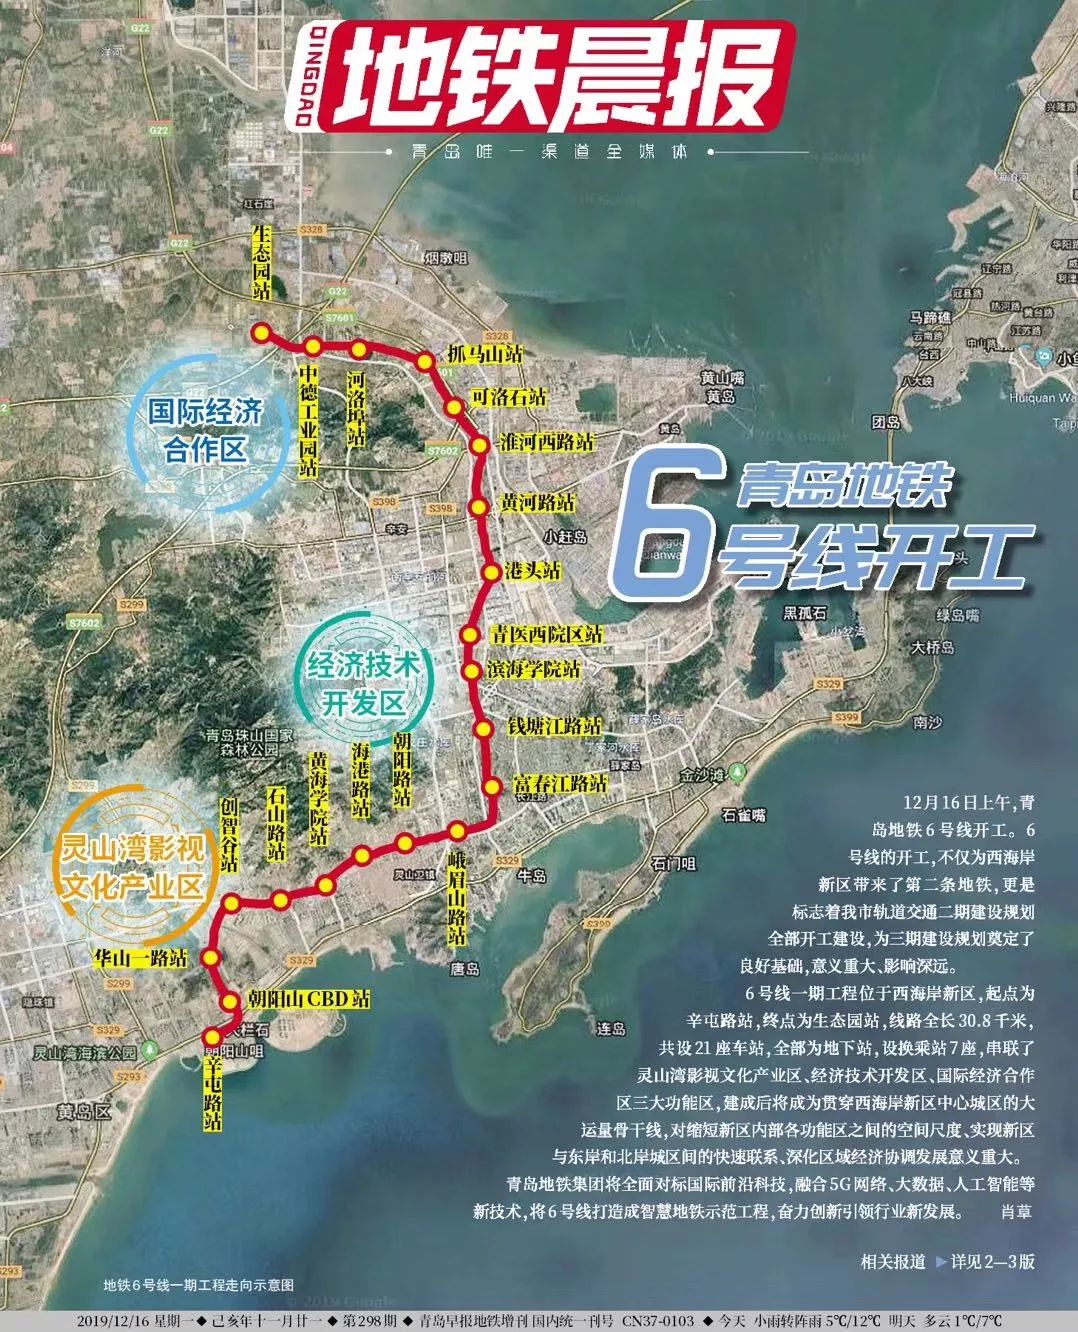 青岛地铁6号线开建,西海岸迎来再造一个城市新中心的关键时刻